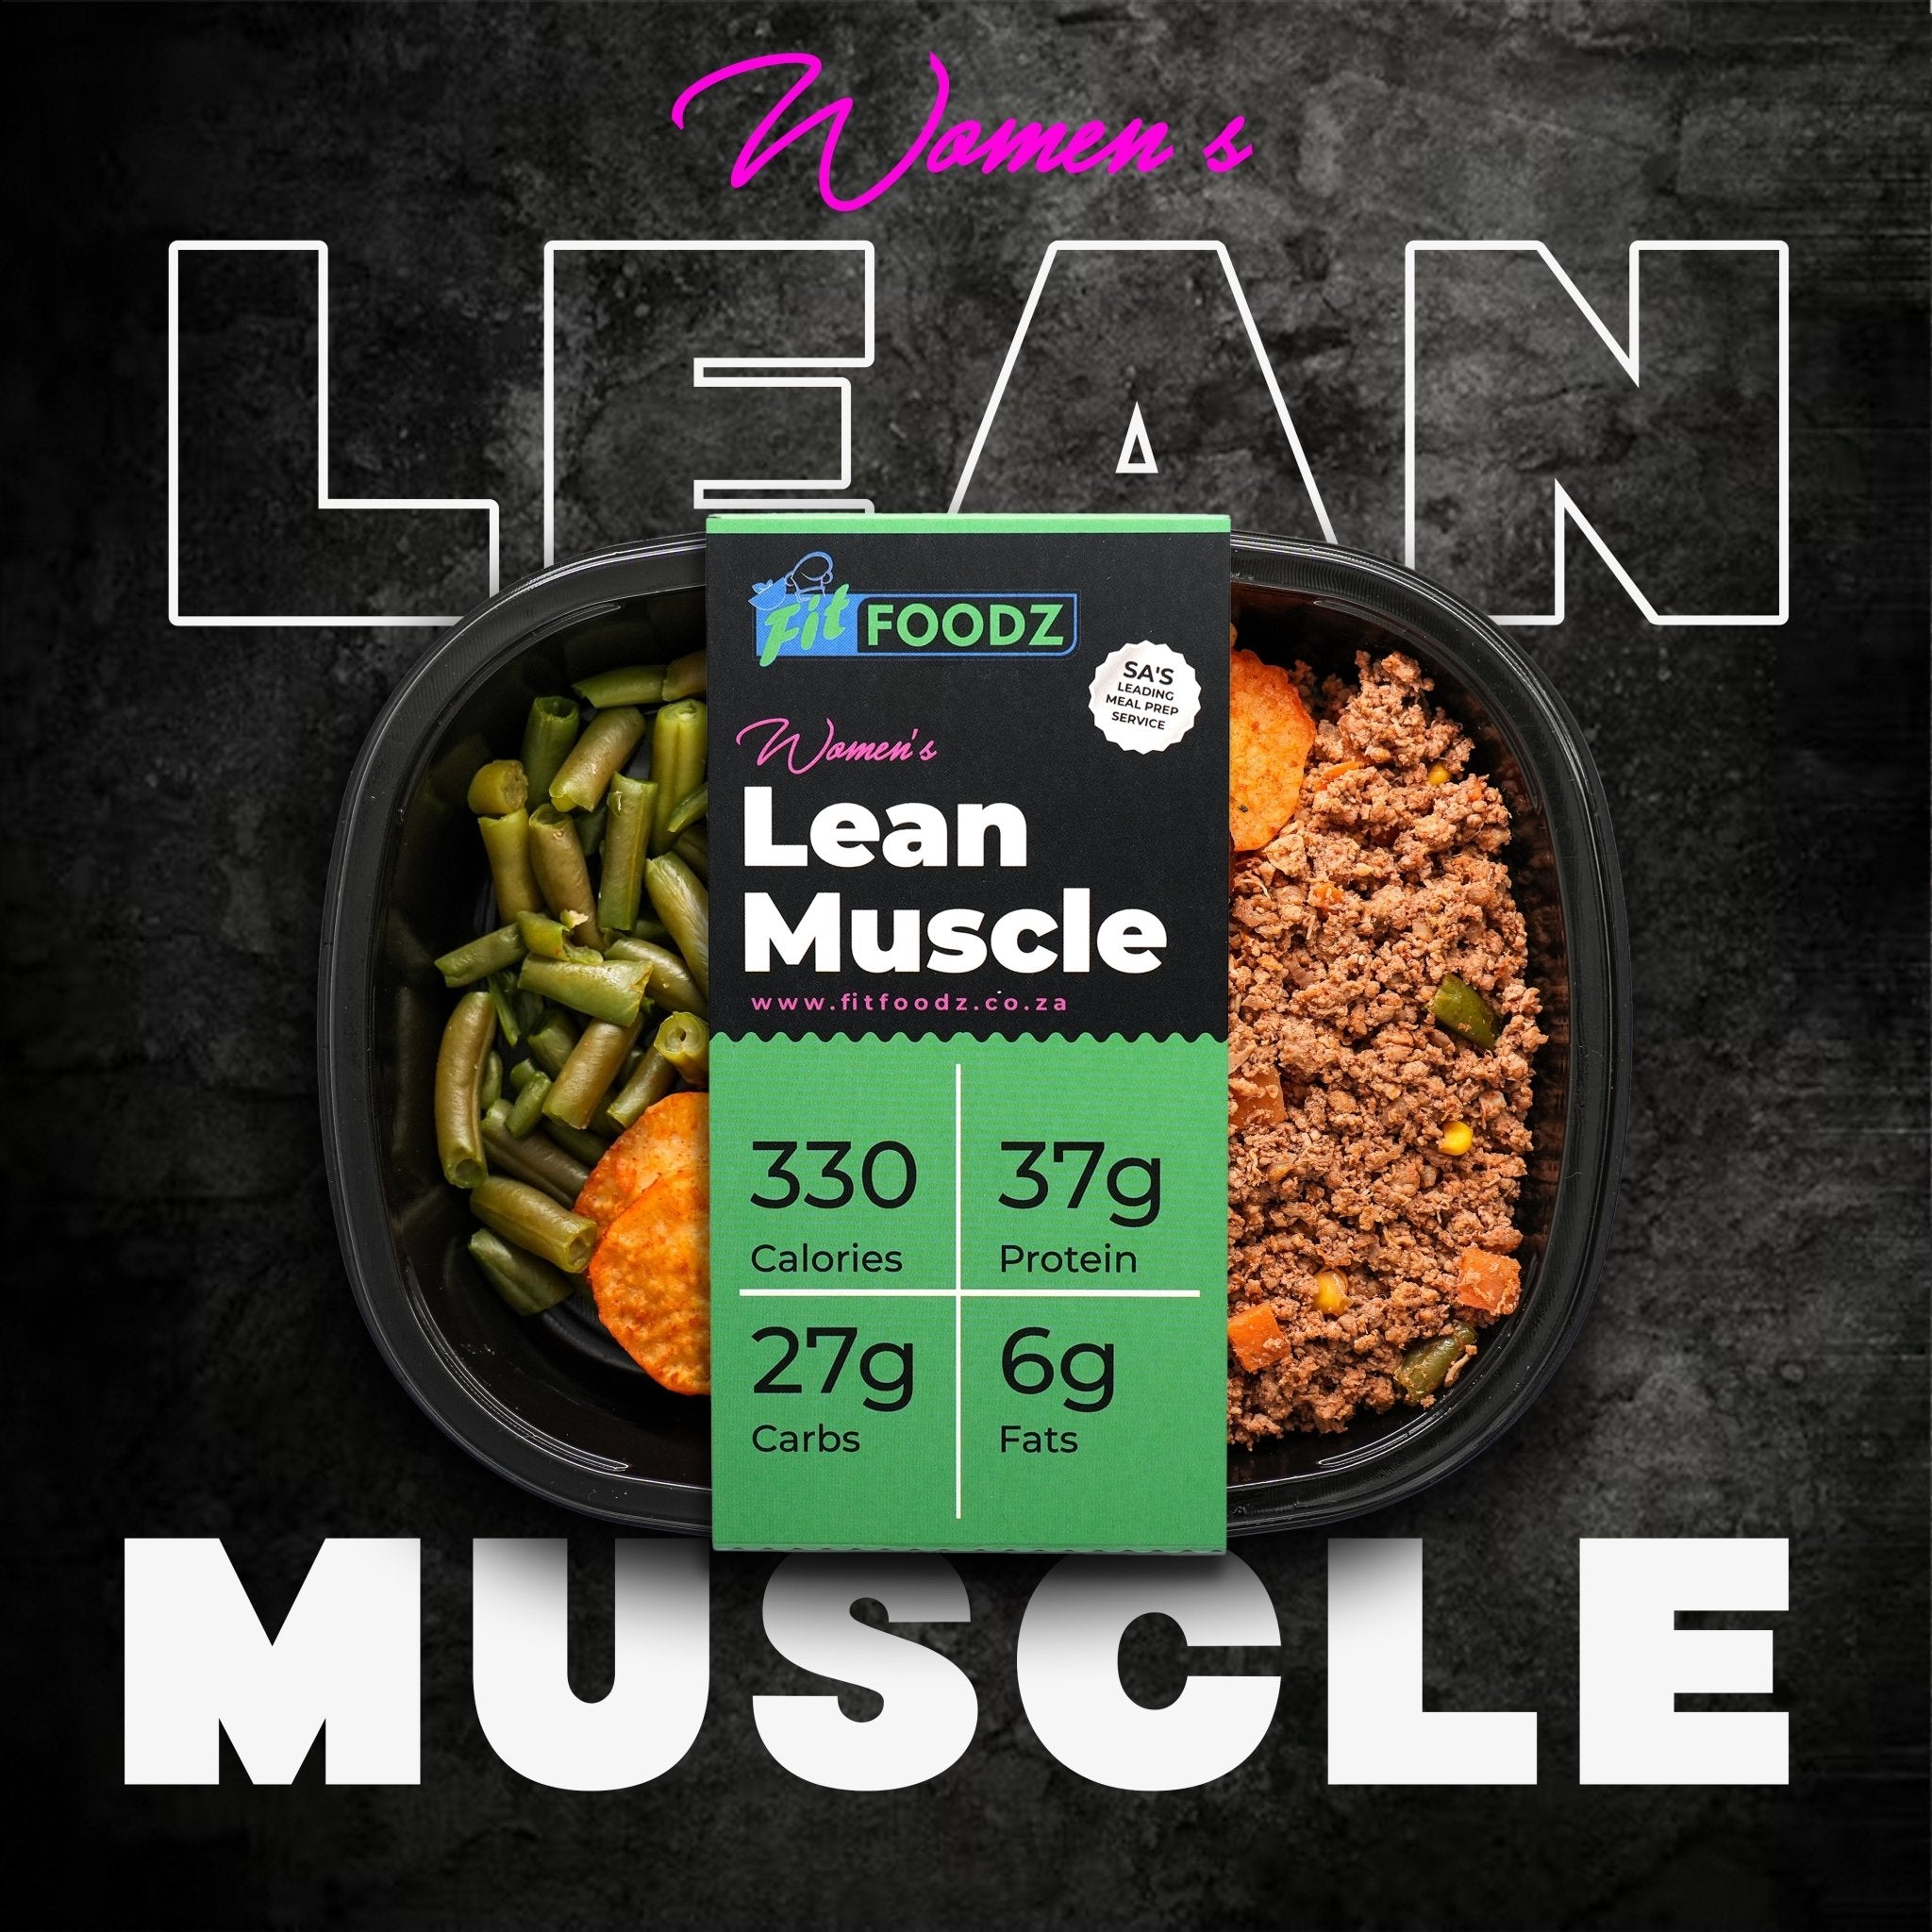 Women's Lean Muscle Meals